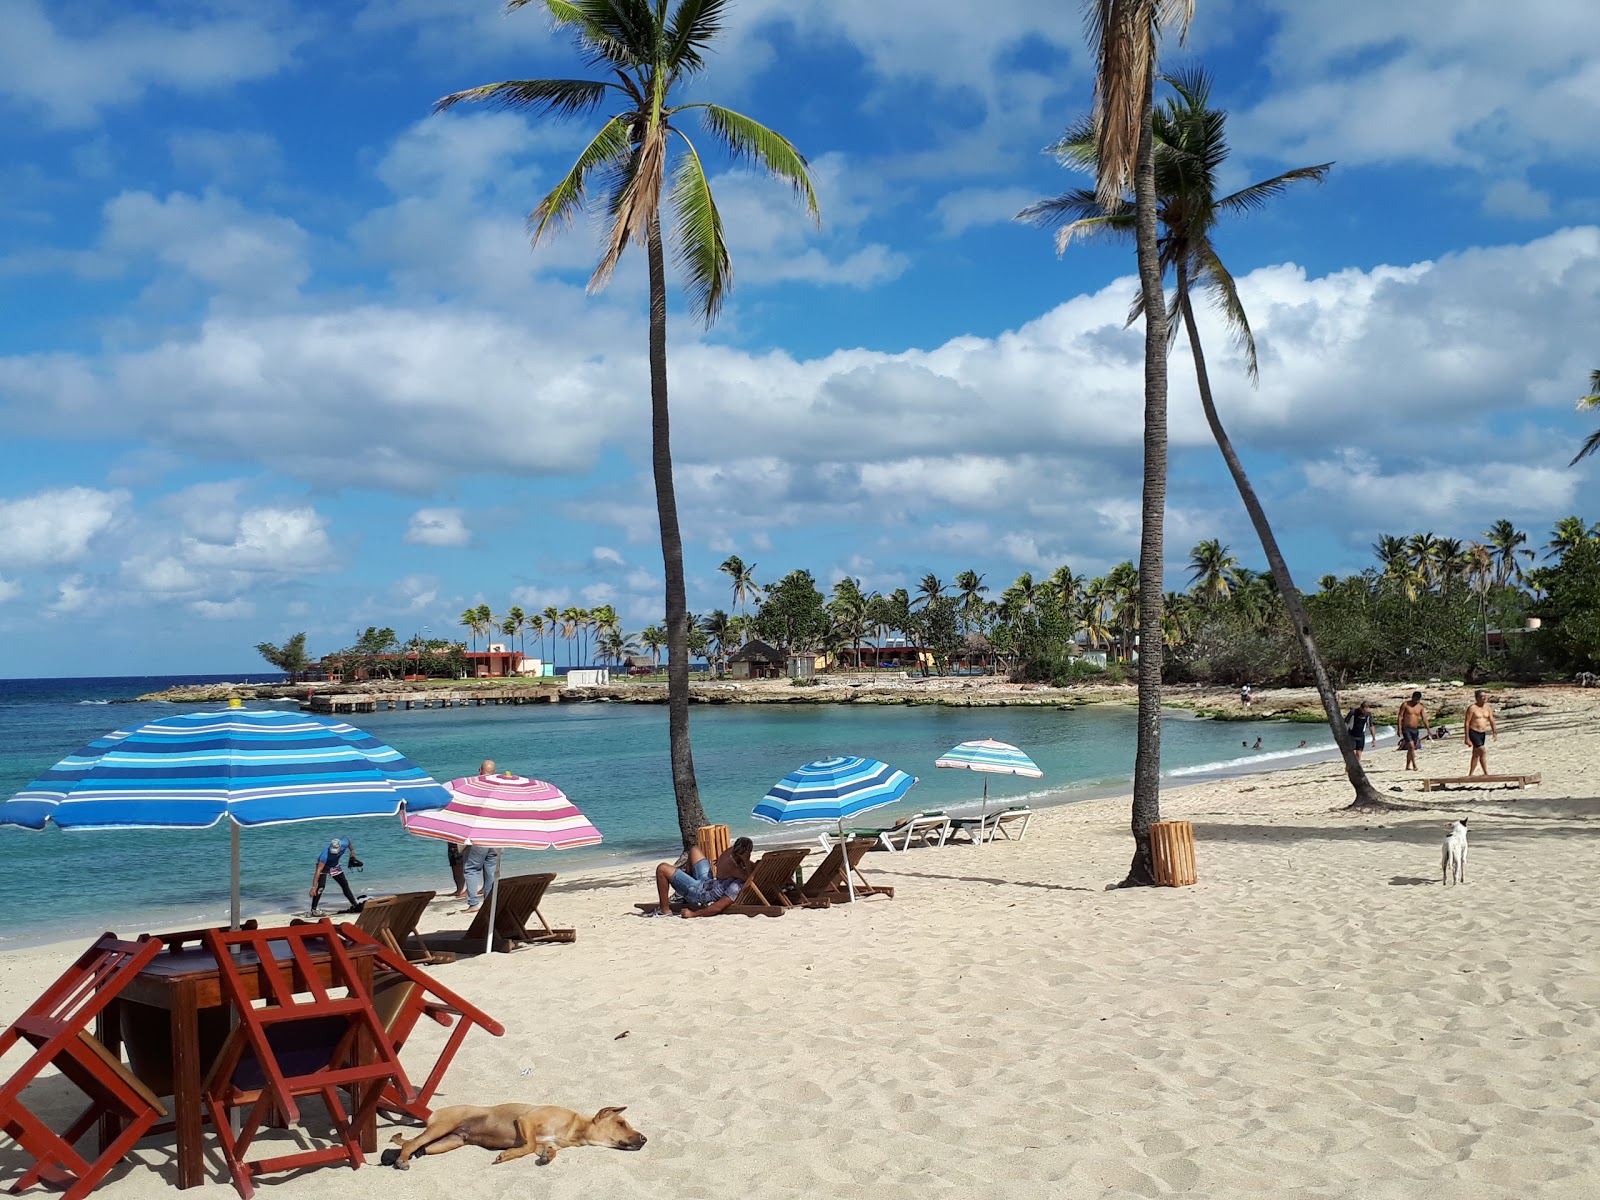 Foto de Playa Bacuranao com areia fina e brilhante superfície